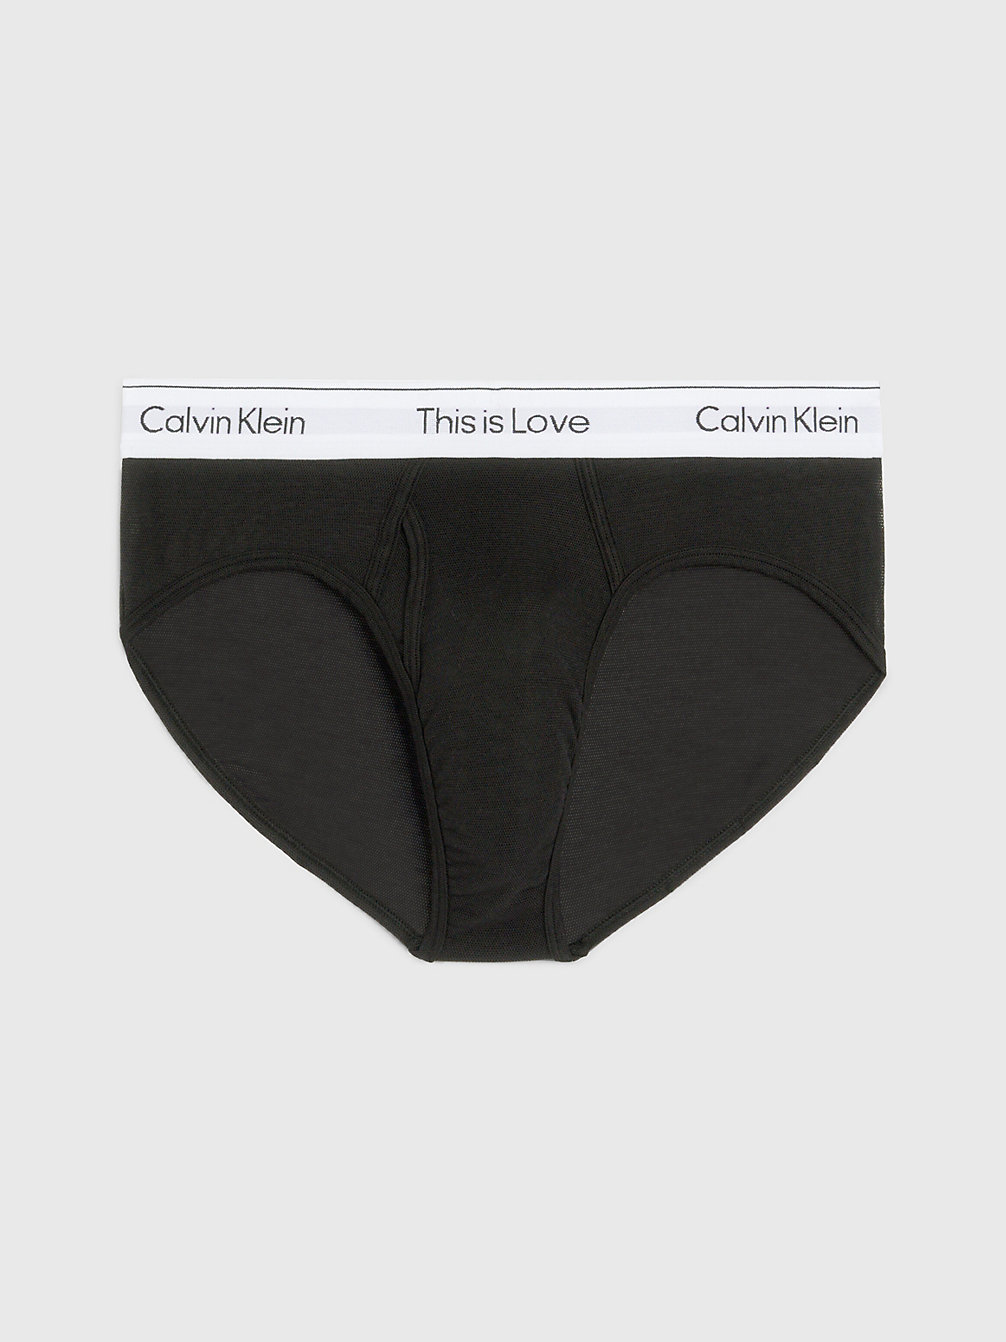 BLACK Mesh Briefs - Pride undefined men Calvin Klein